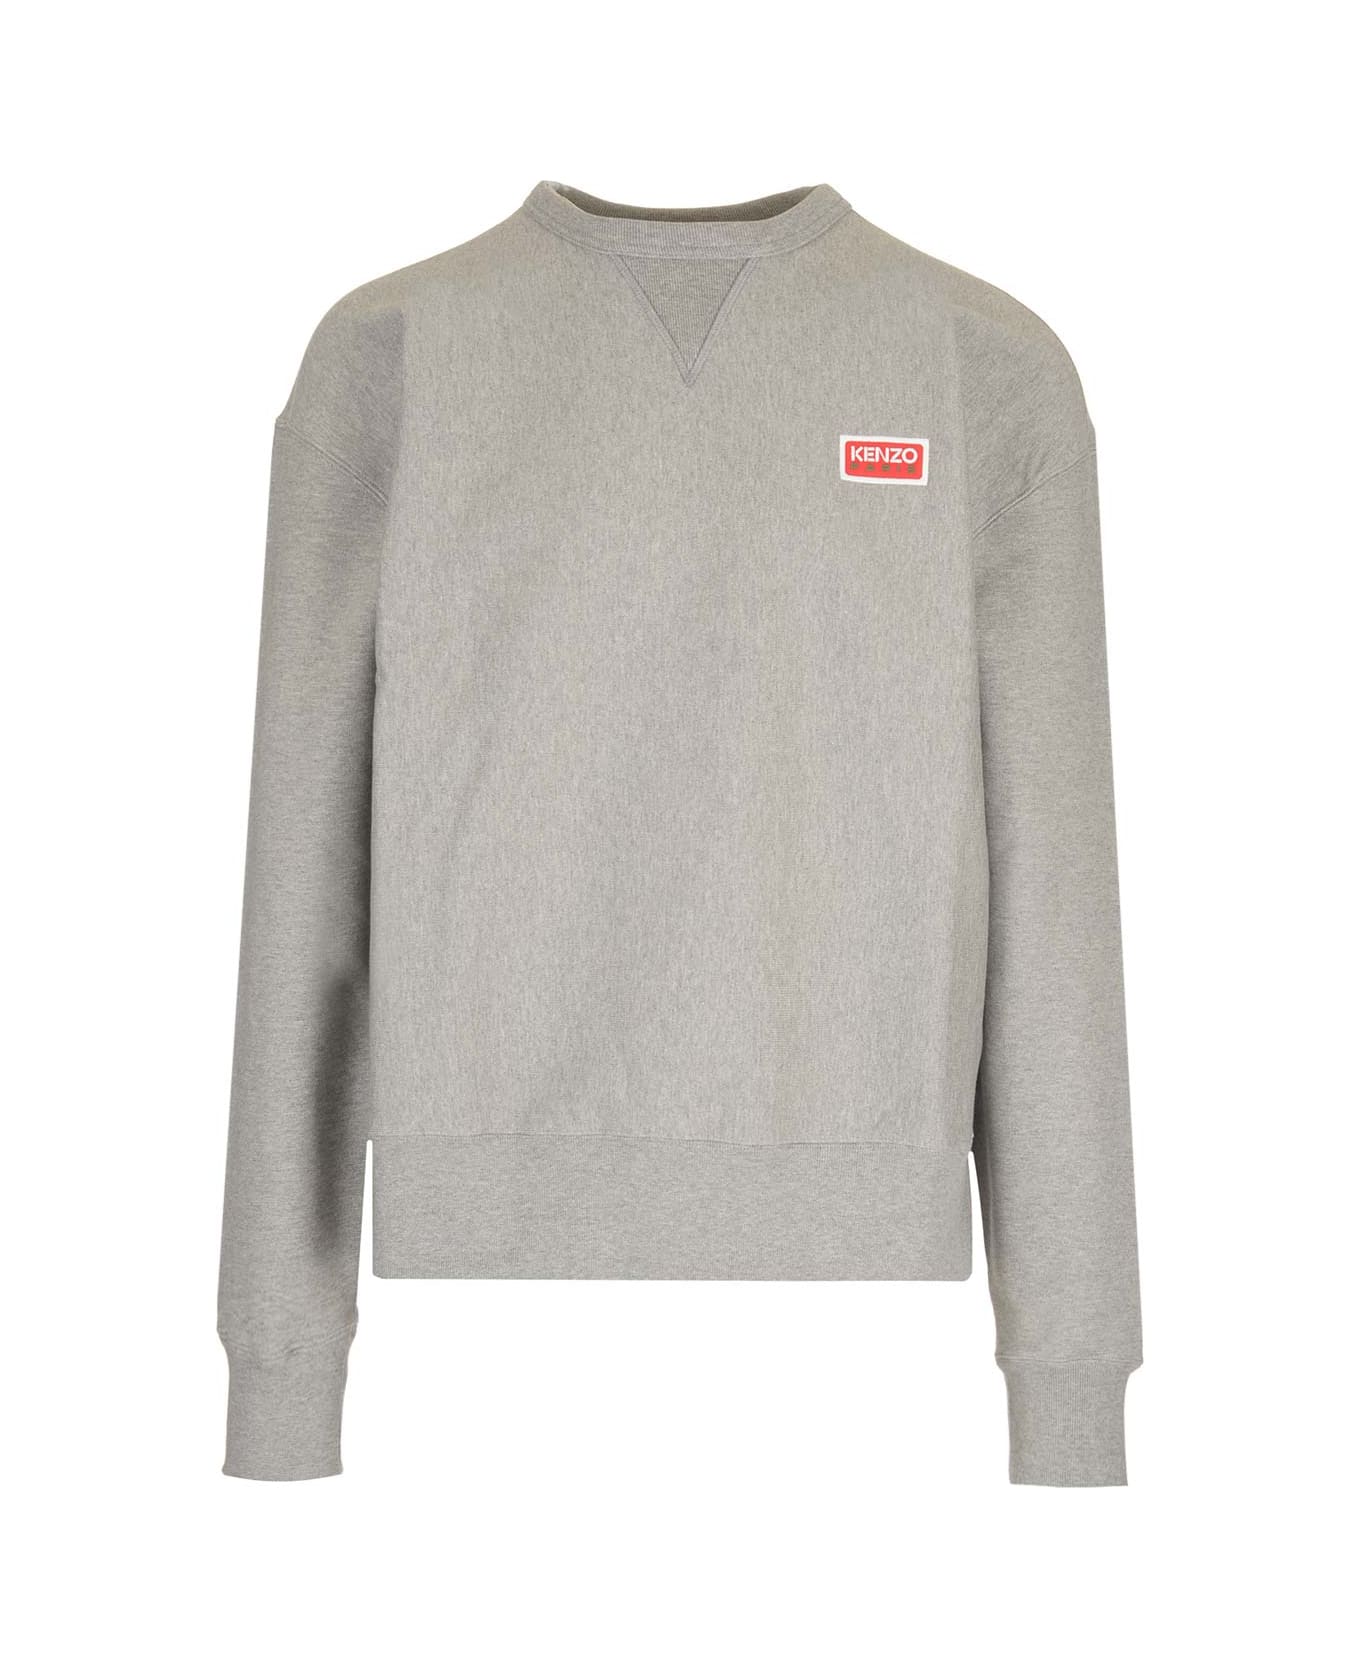 Kenzo Sweatshirt With Logo - Grey フリース